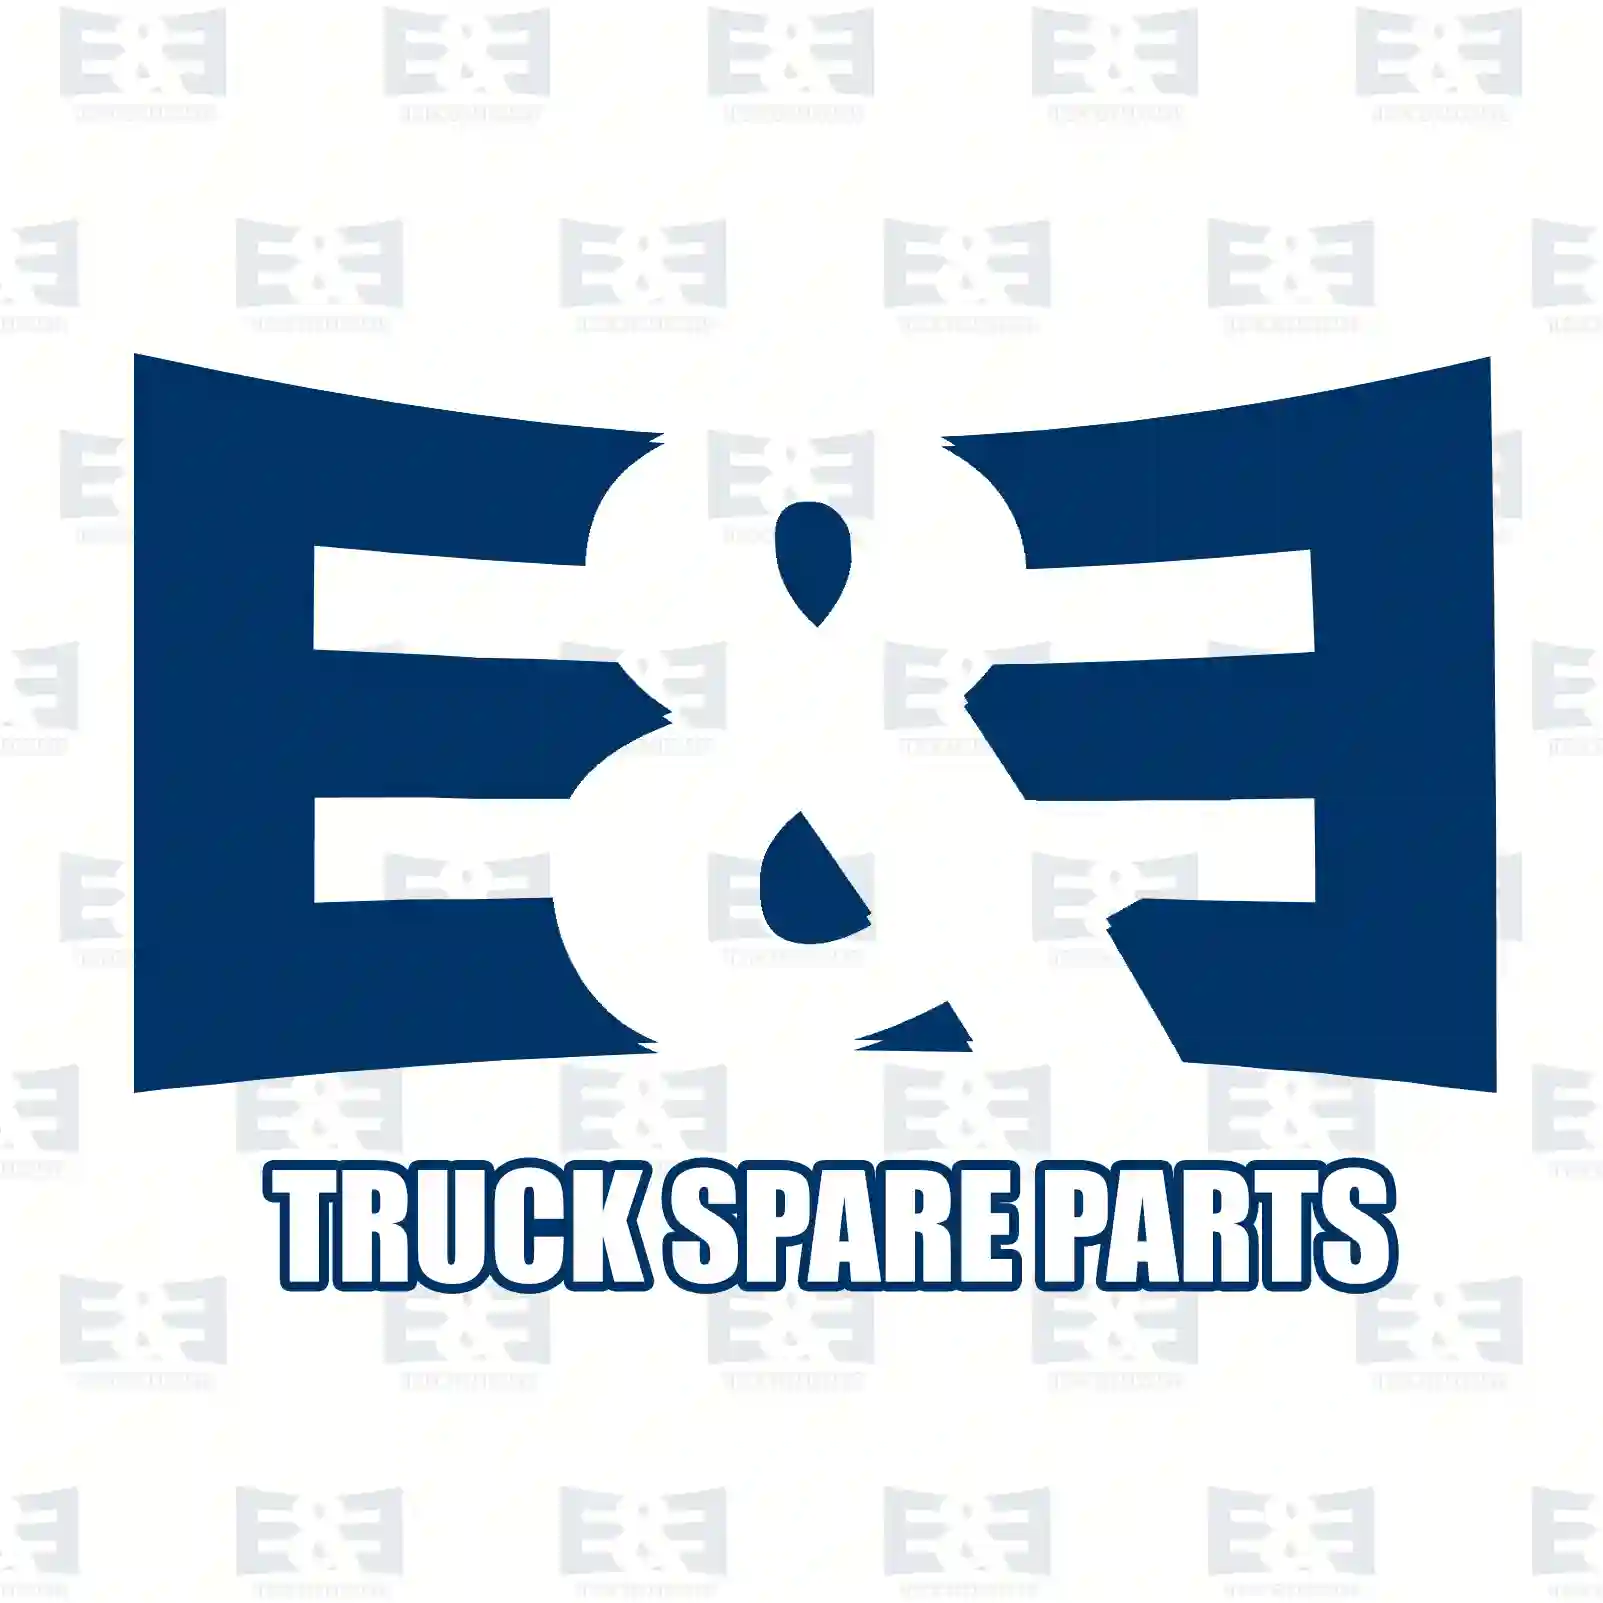 O-ring, 2E2286196, 06563311234, 06569360692, 85300010670 ||  2E2286196 E&E Truck Spare Parts | Truck Spare Parts, Auotomotive Spare Parts O-ring, 2E2286196, 06563311234, 06569360692, 85300010670 ||  2E2286196 E&E Truck Spare Parts | Truck Spare Parts, Auotomotive Spare Parts